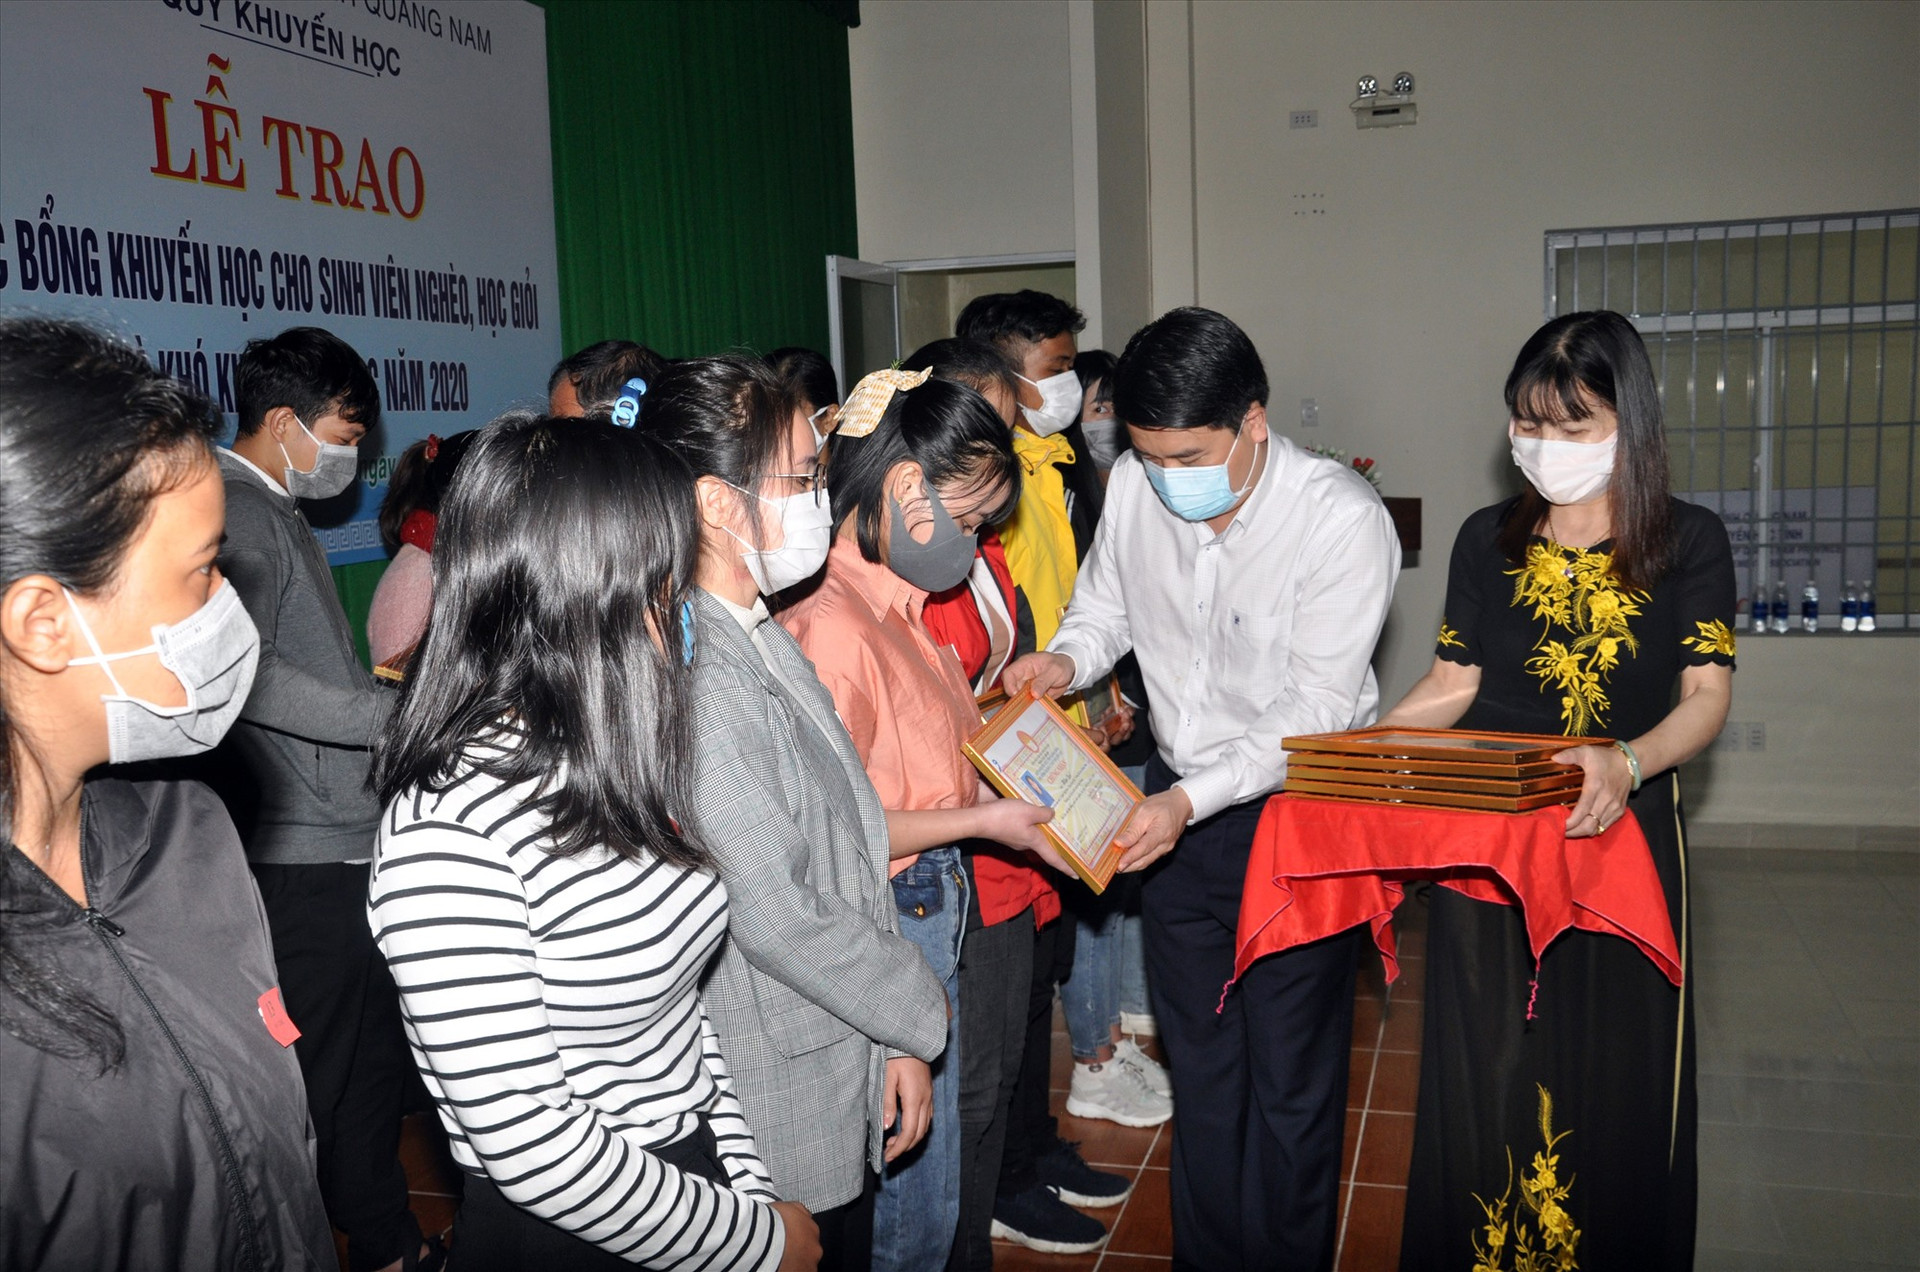 Phó Chủ tịch UBND tỉnh Trần Văn Tân trao học bổng cho sinh viên nghèo học giỏi. Ảnh: X.P